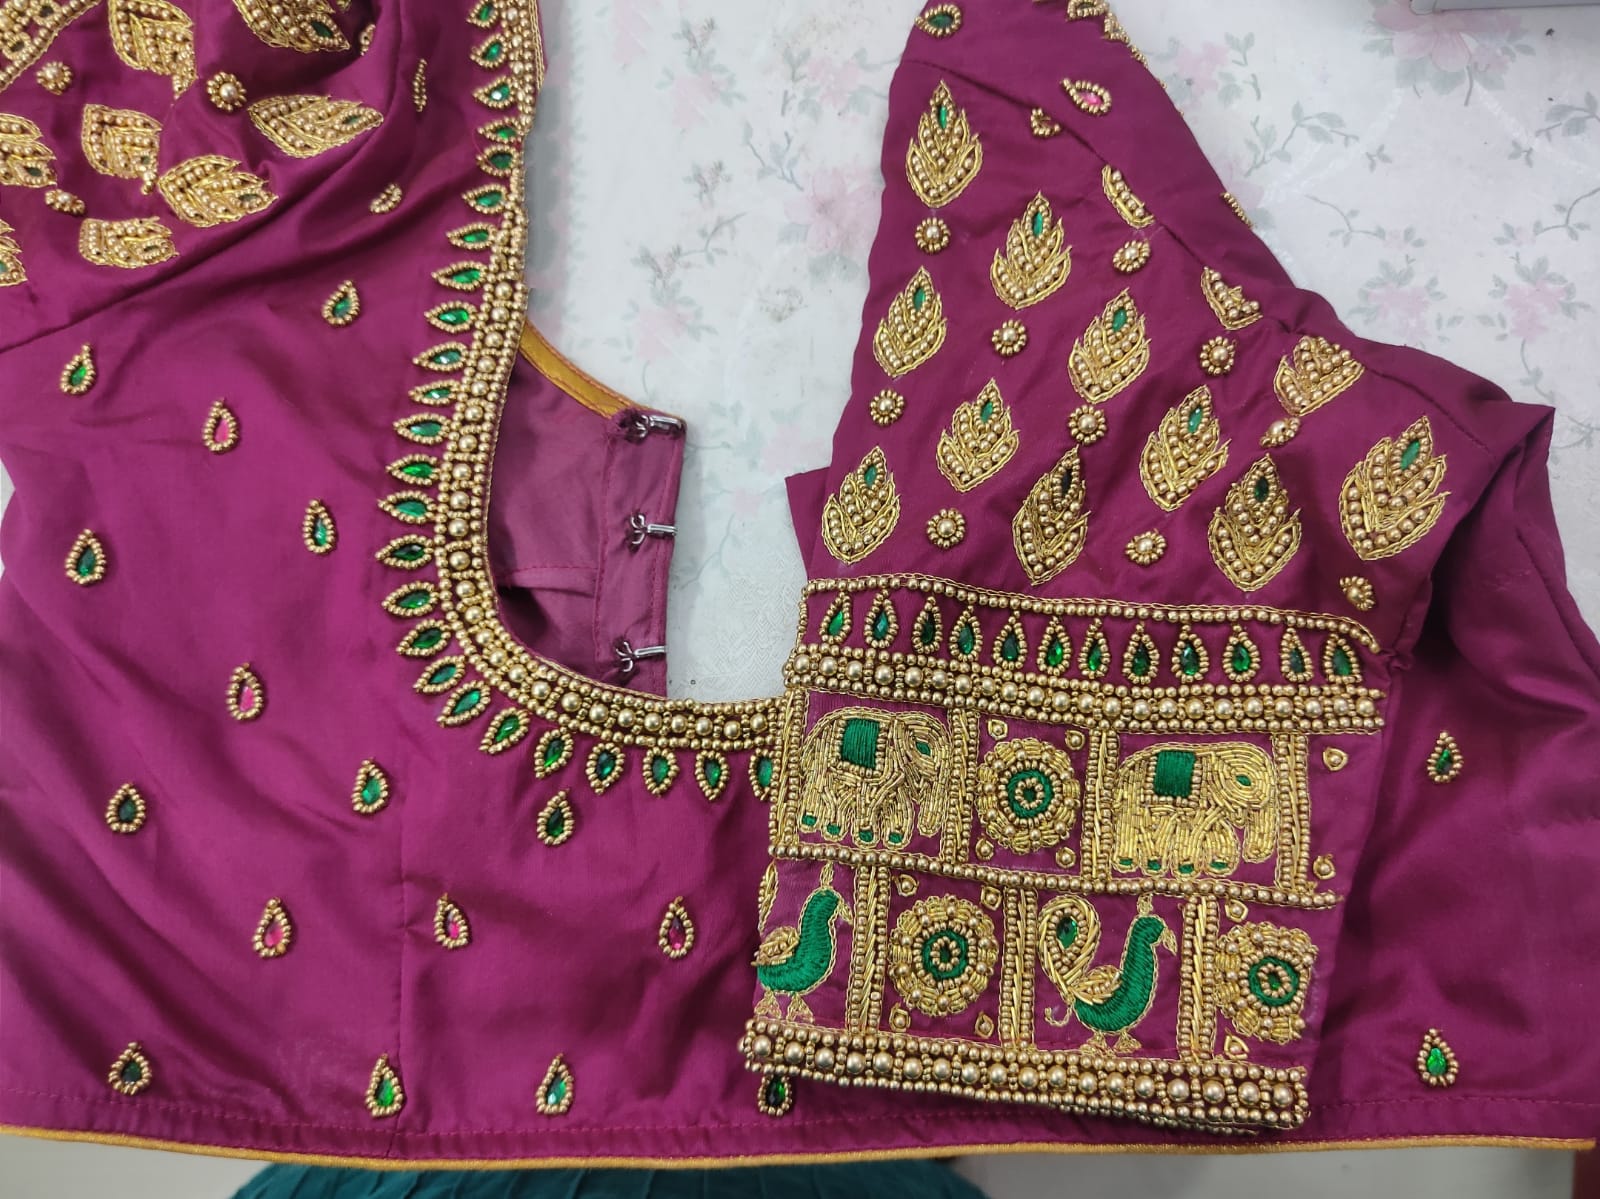 readymade maggam work blouses for women/girls - REVELLA